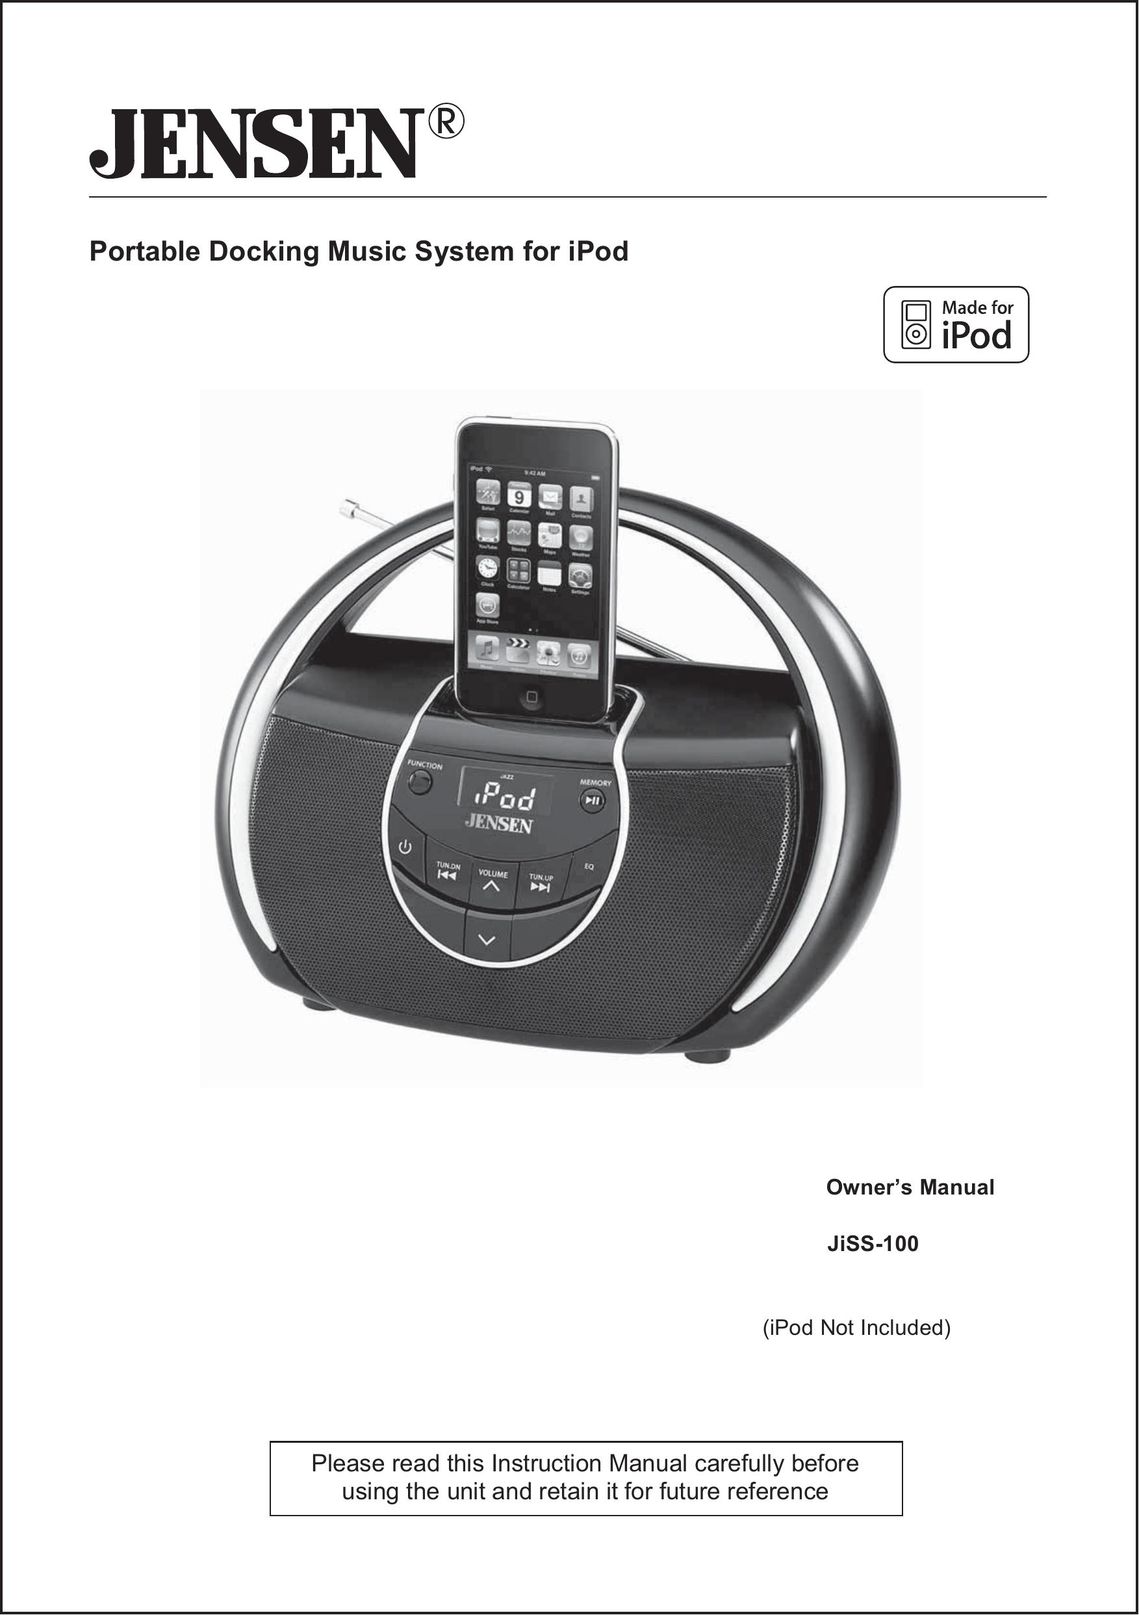 Jensen JiSS-100 MP3 Docking Station User Manual